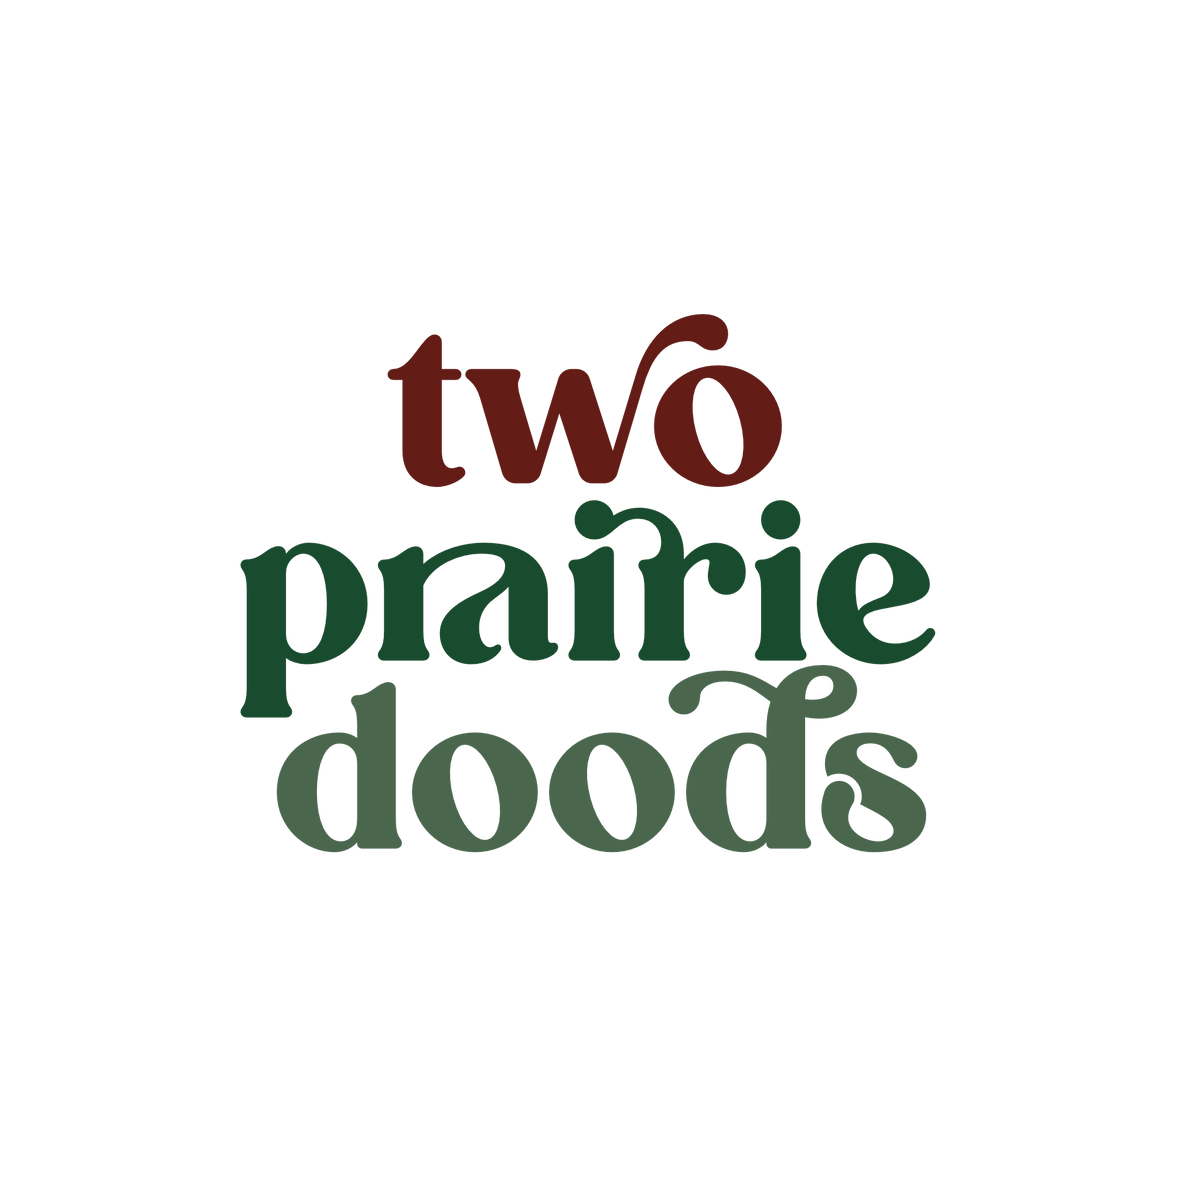 Two Prairie Doods